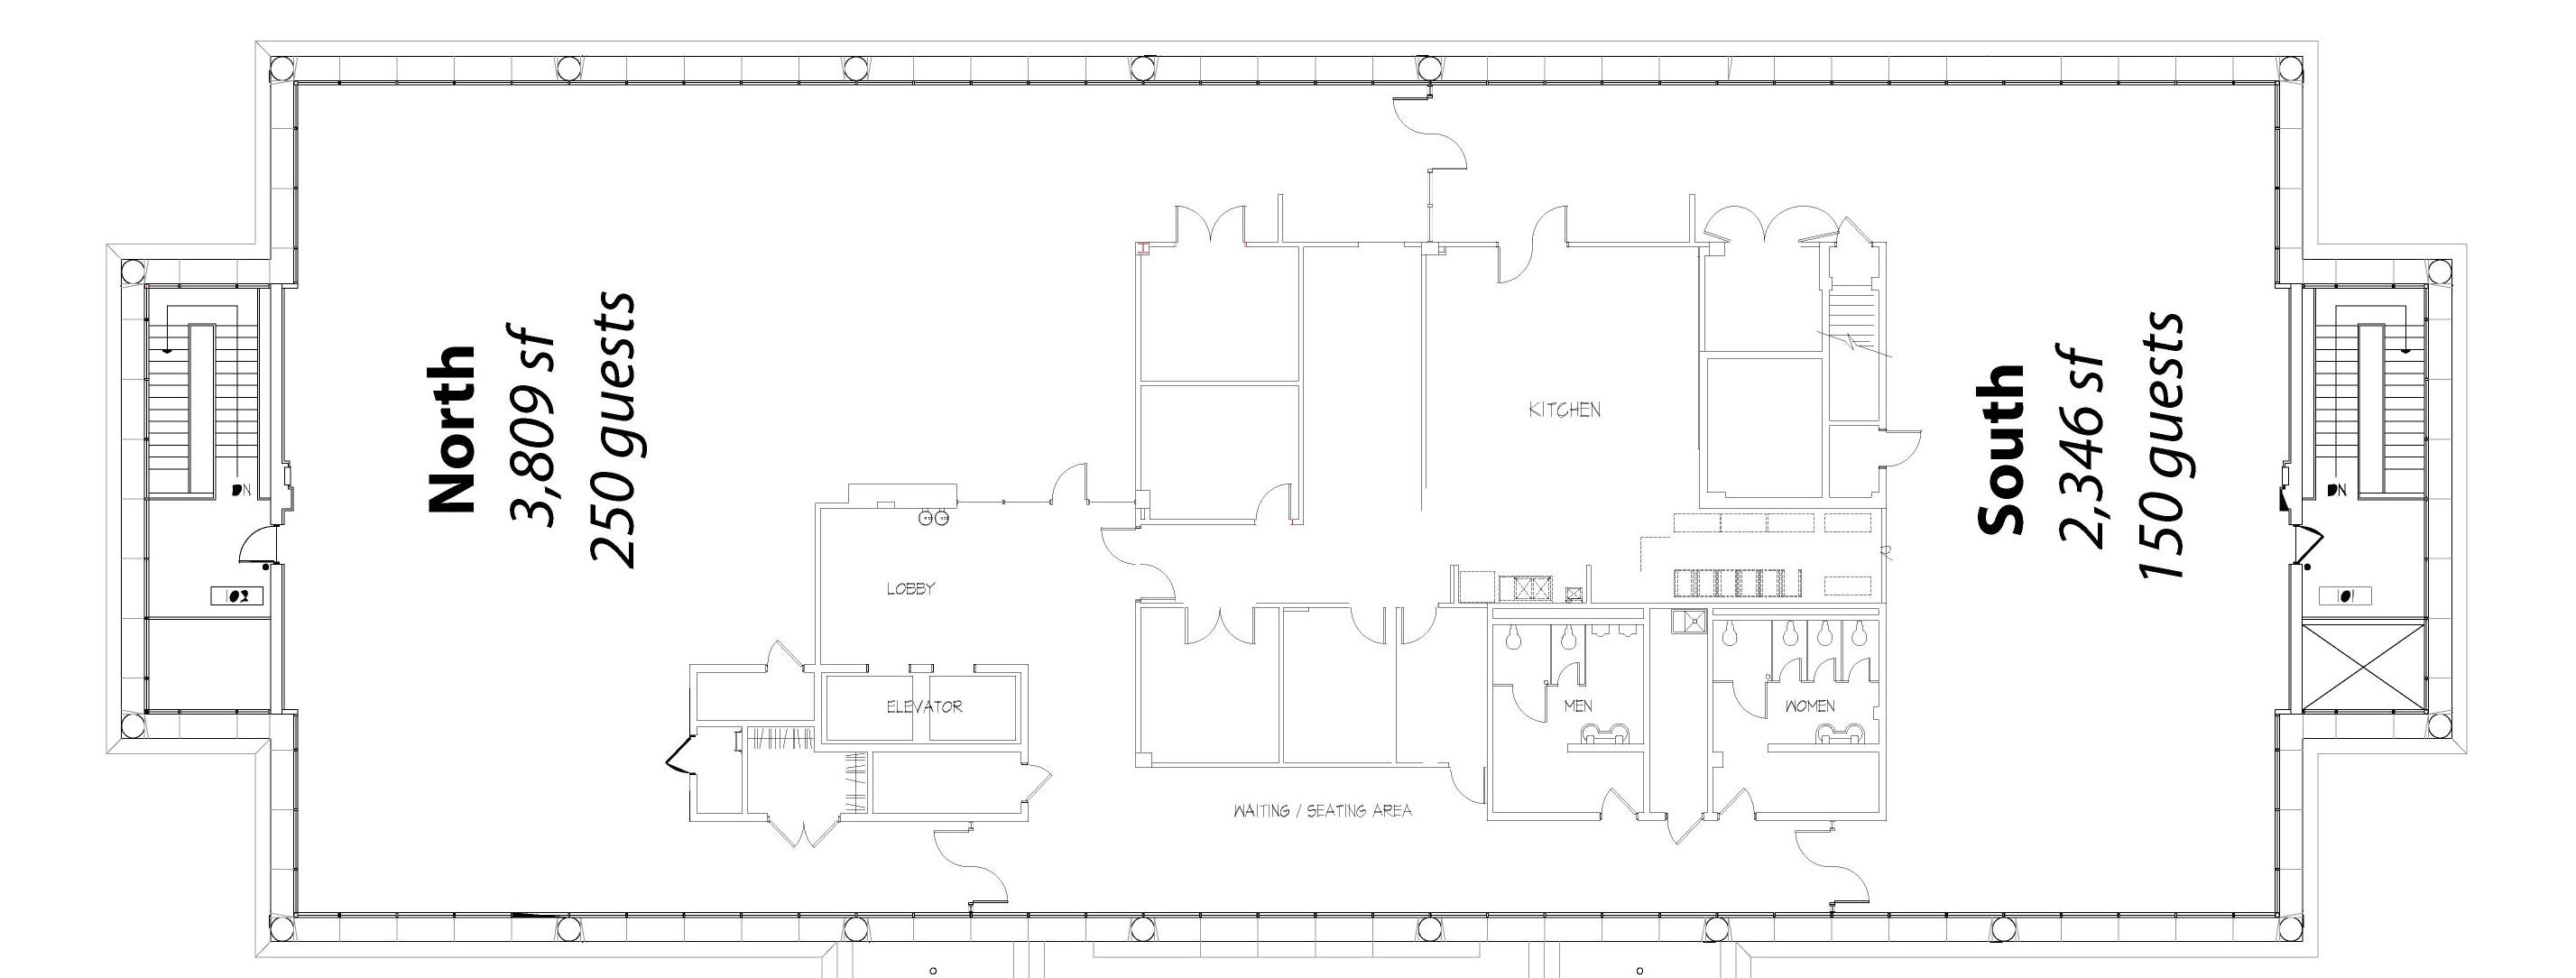 Floor plan of CityView